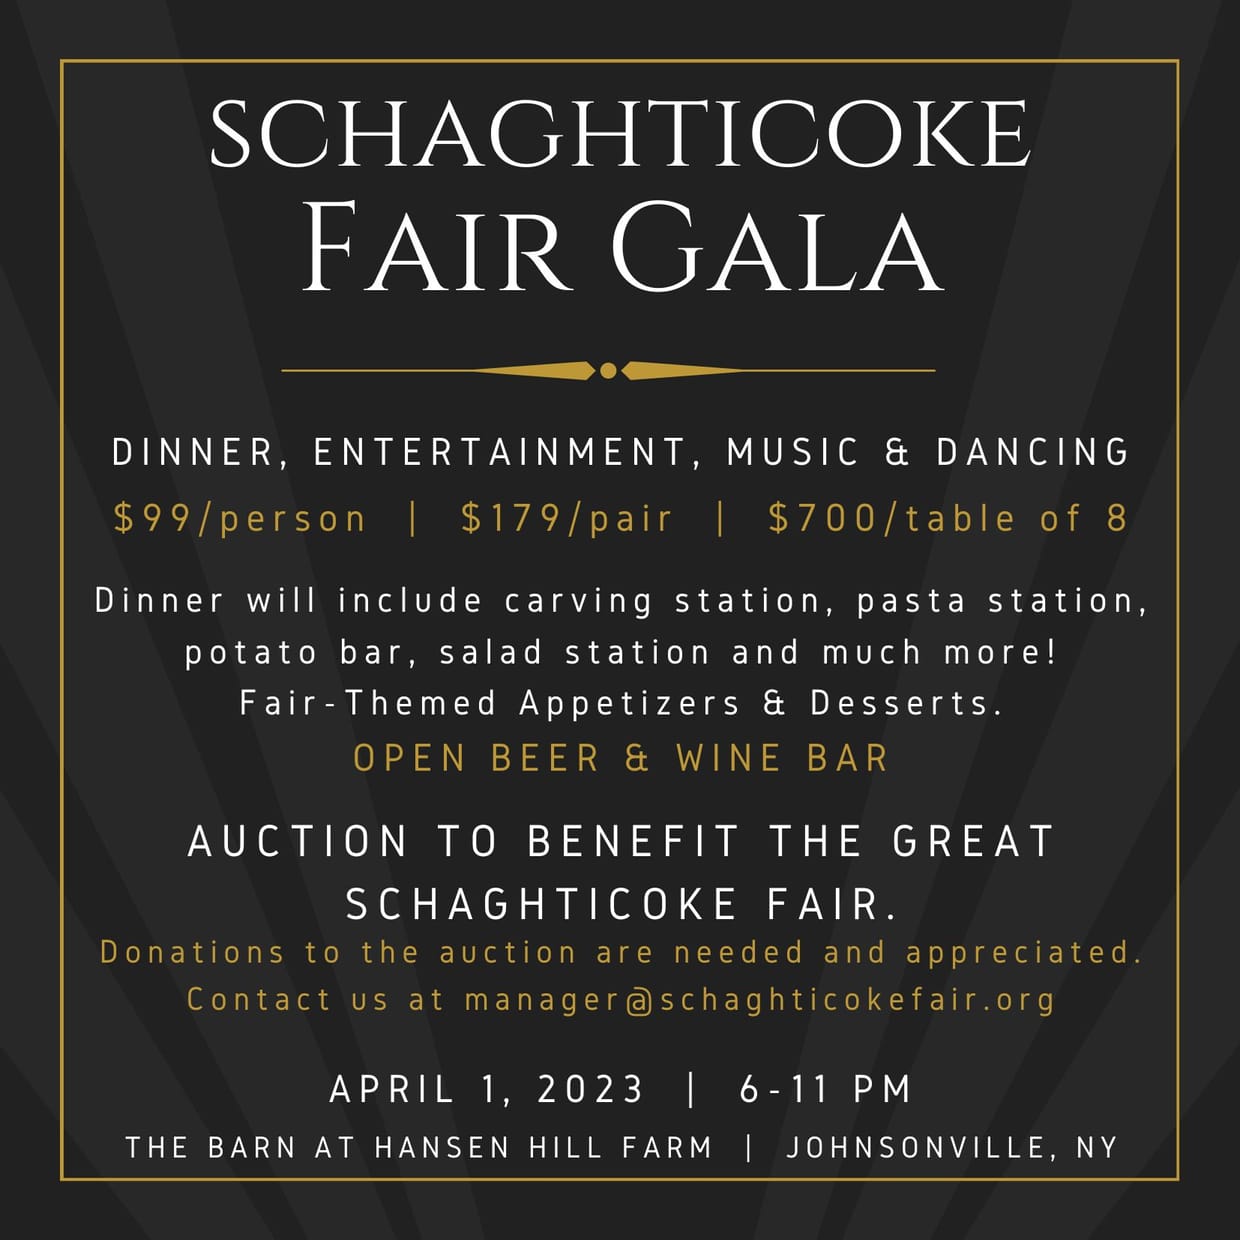 Schaghticoke Fair Gala